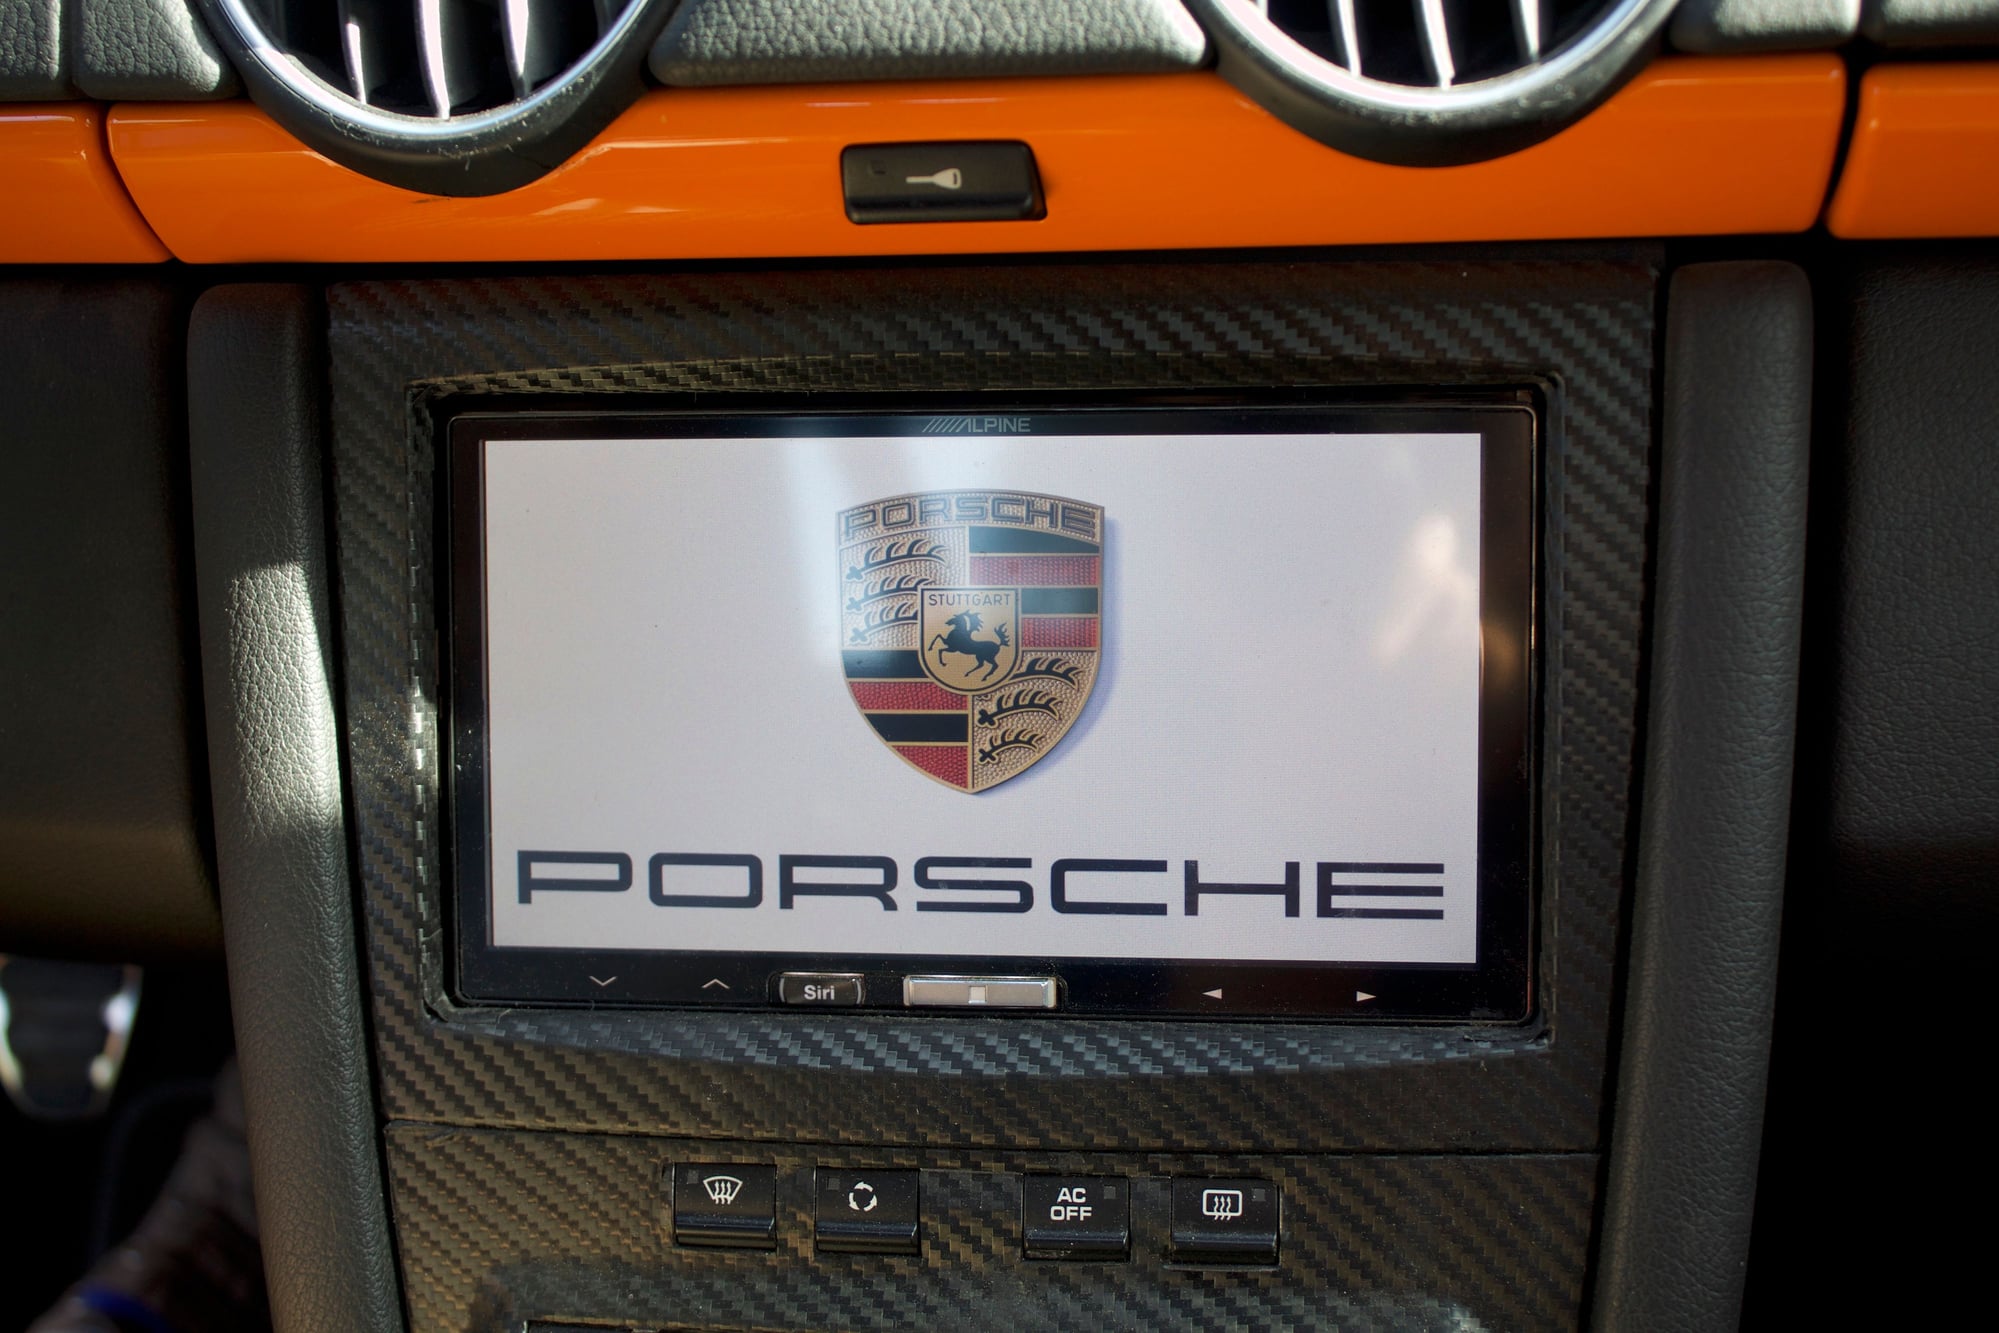 2008 Porsche Boxster - 2008 Porsche Boxster Limited Edition in GT3 Orange - Used - VIN WP0CA29828U710682 - 54,000 Miles - 6 cyl - 2WD - Manual - Convertible - Orange - Palo Alto, CA 94306, United States